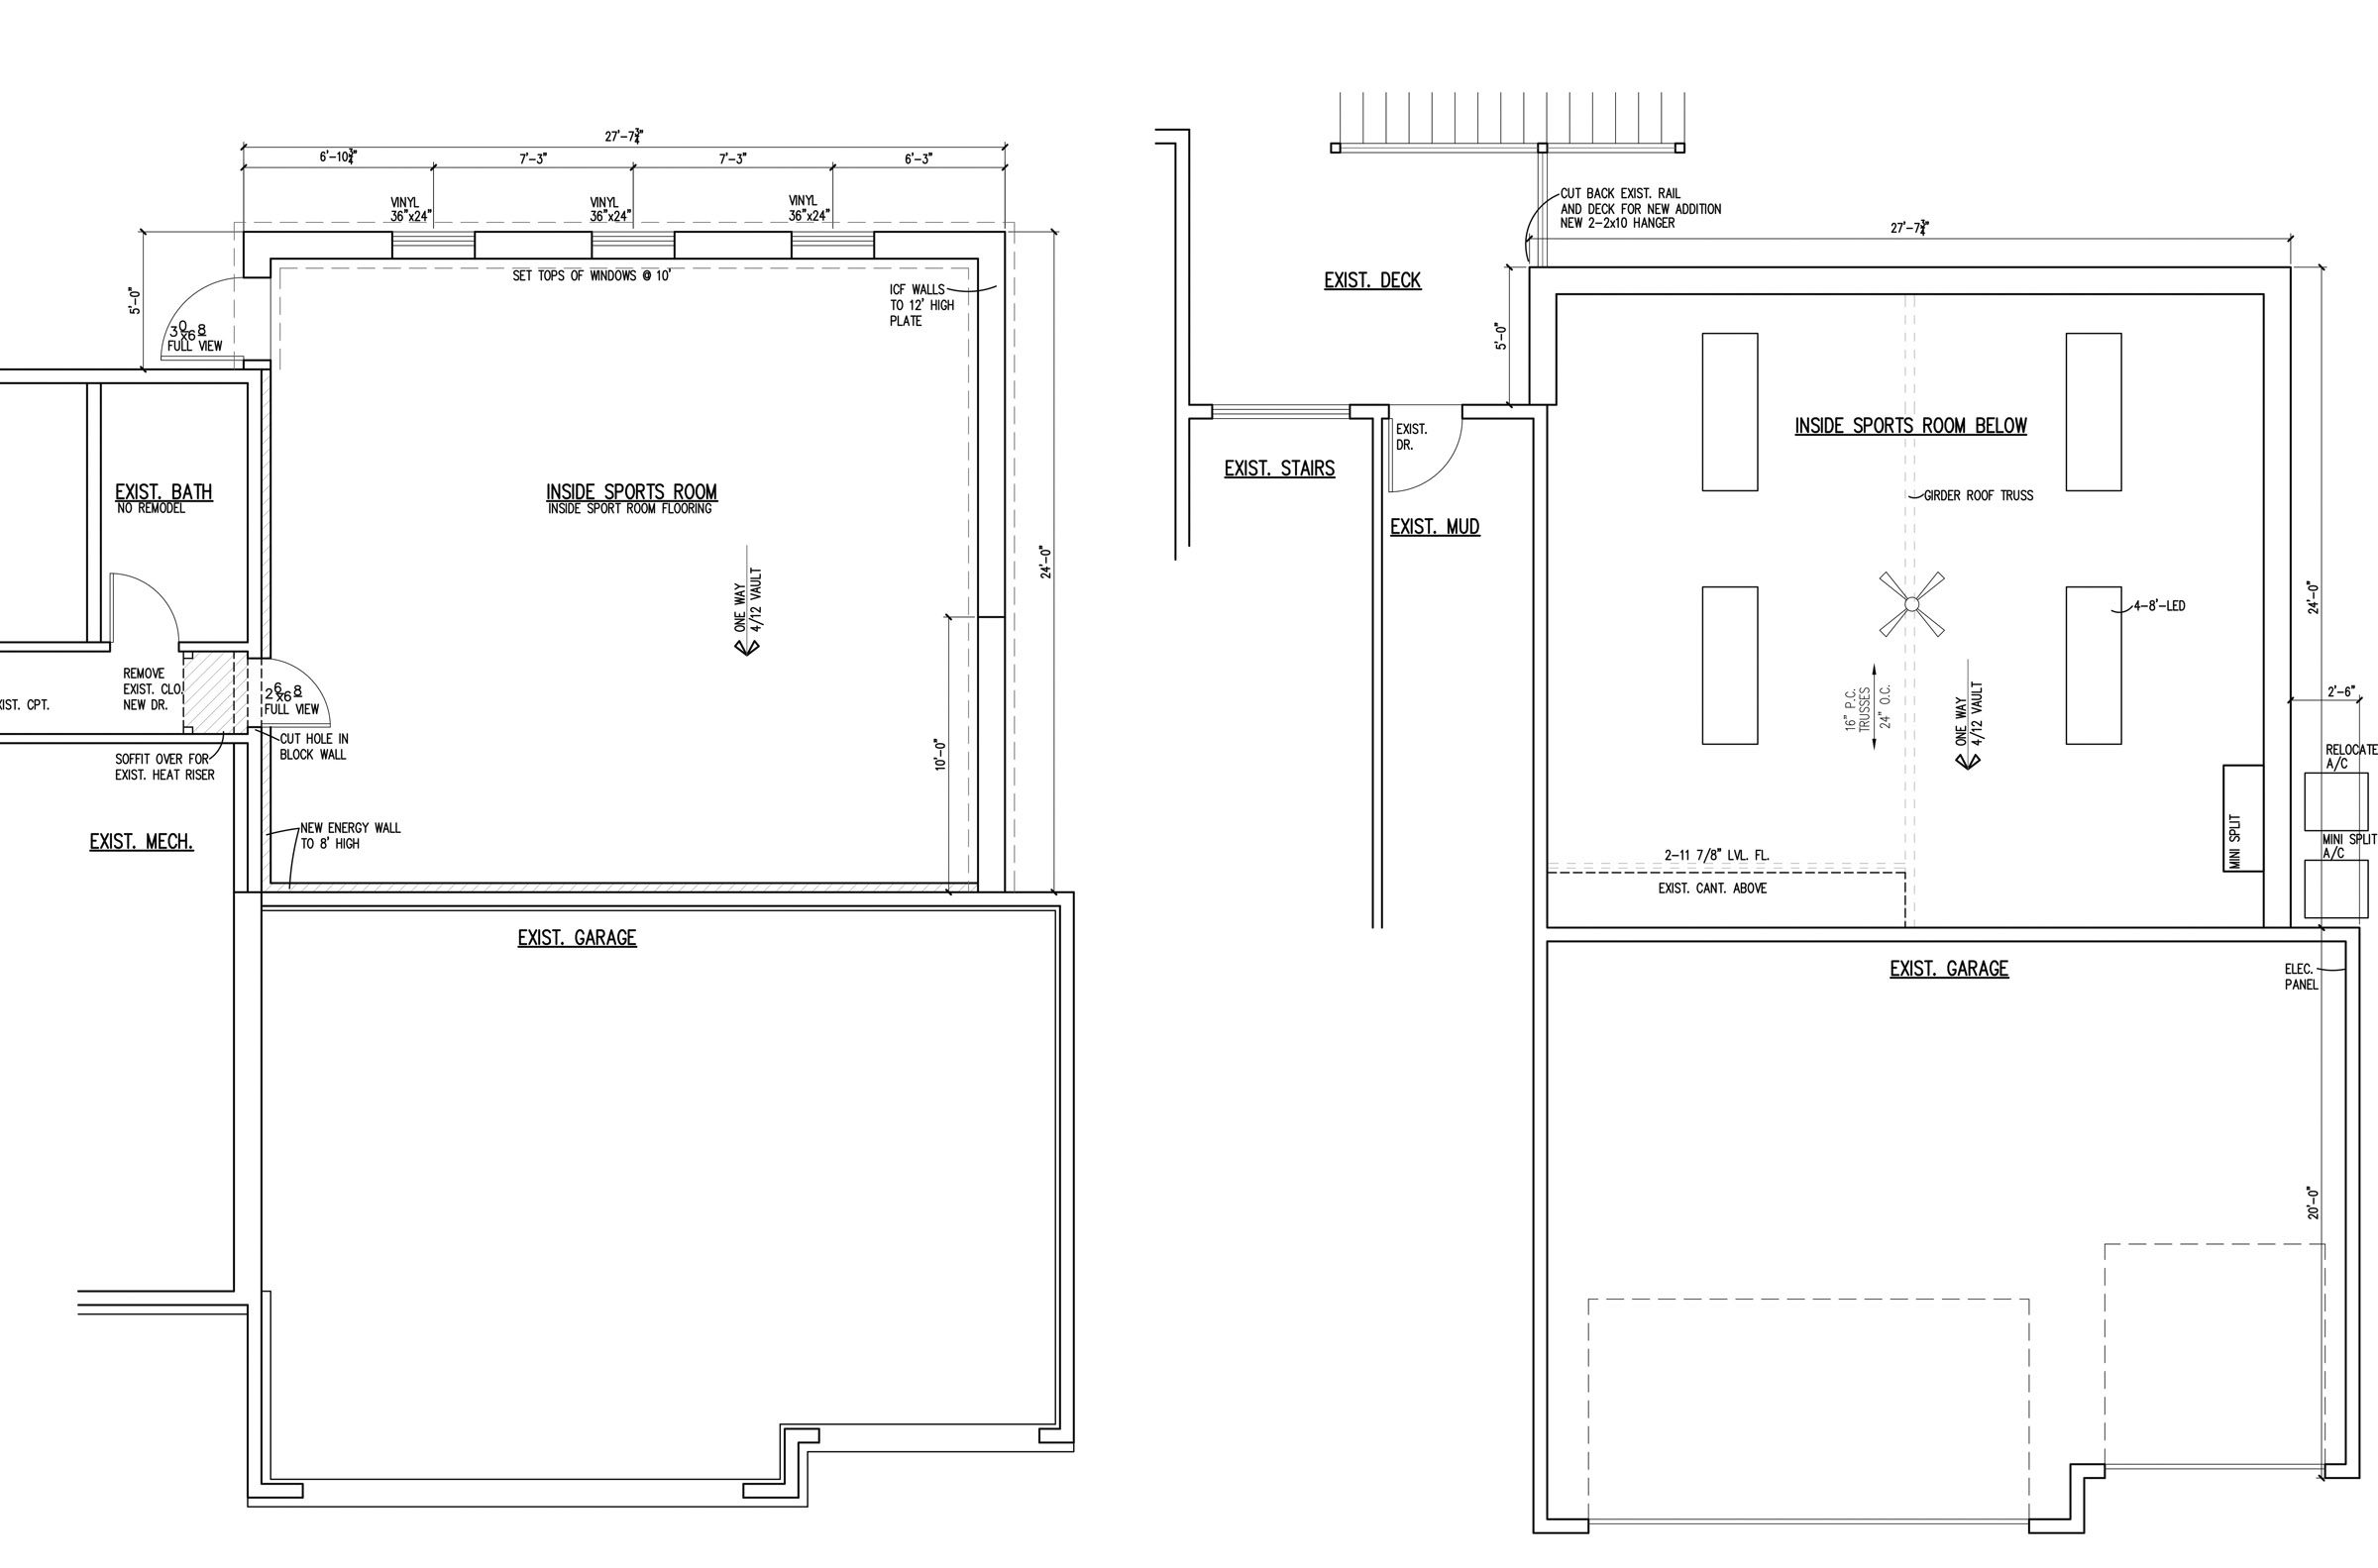 New Indoor Sports Room® Interior Plan